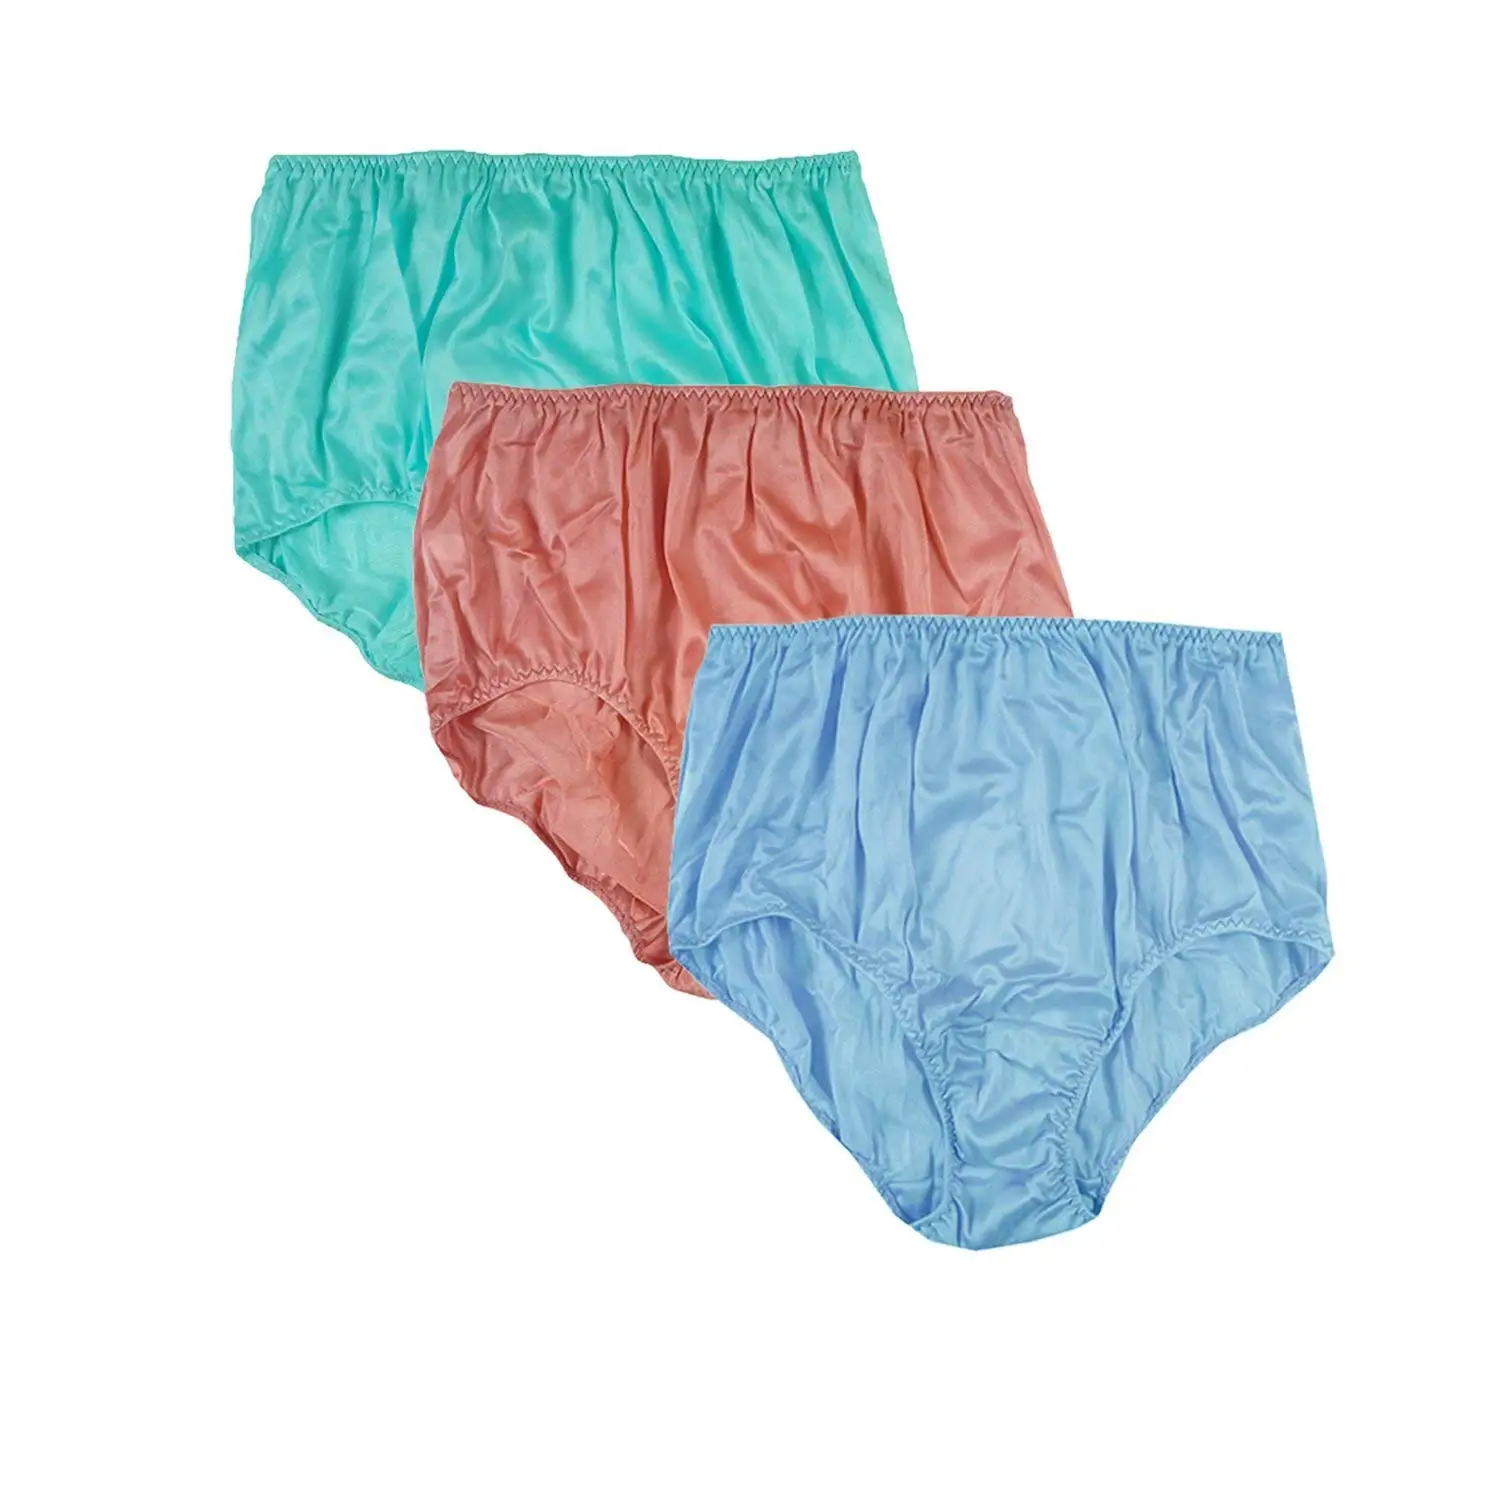 Cheap Bbw Underwear, find Bbw Underwear deals on line at Alibaba.com